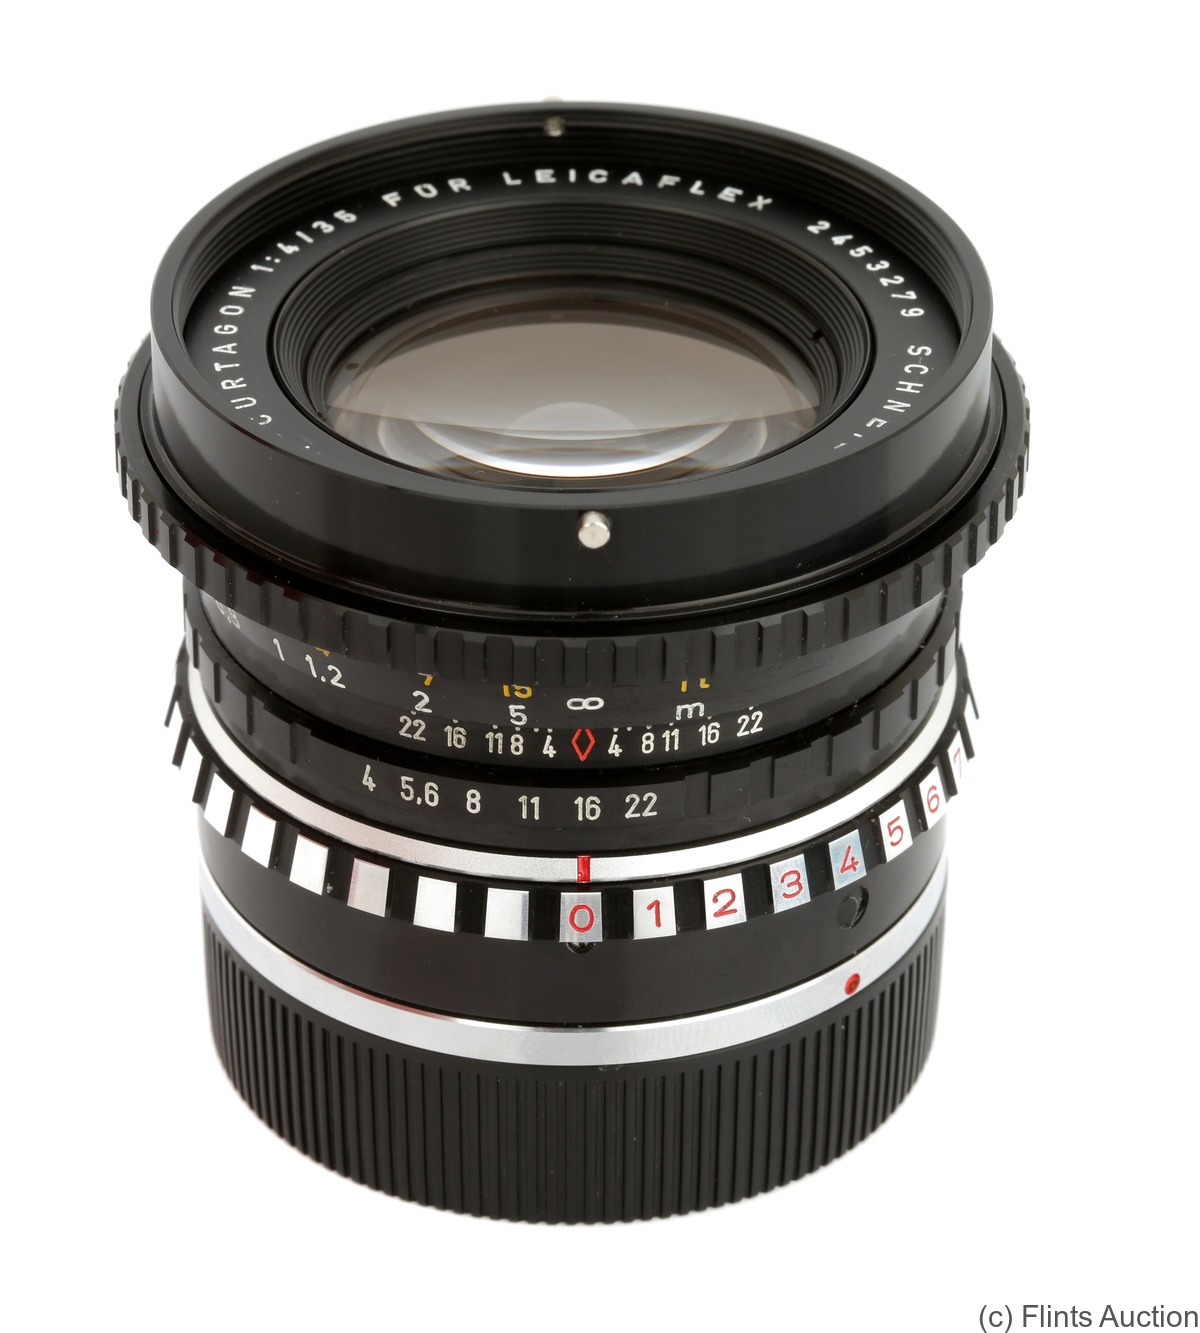 Schneider: 35mm (3.5cm) f4 PA-Curtagon (Leicaflex) camera